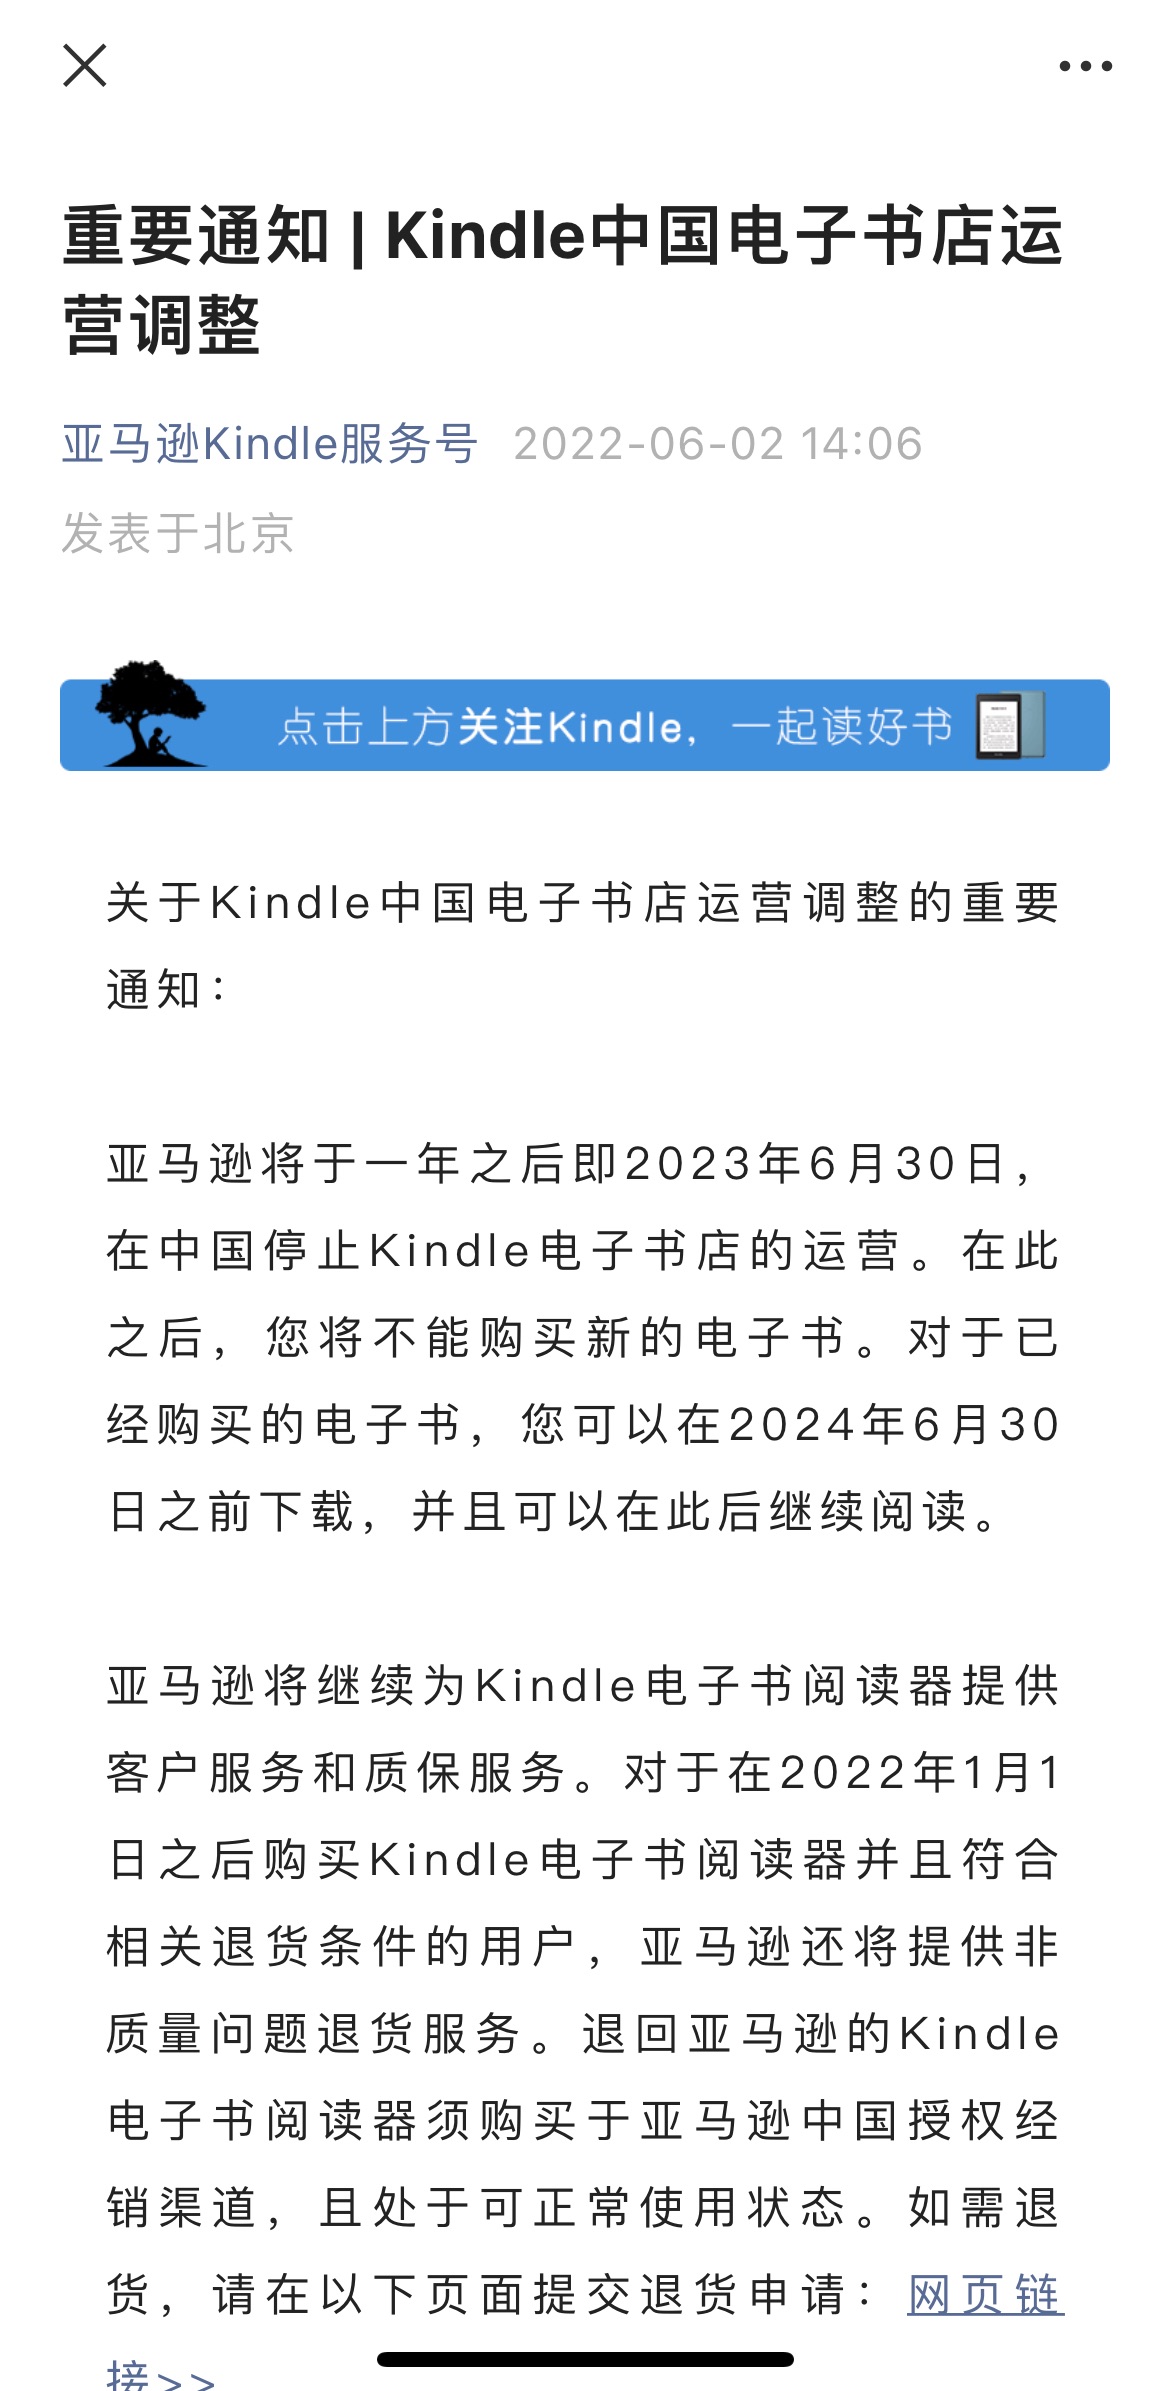 Kindle中国电子书店将停止运营 网友 感谢陪伴 仍会保留阅读器